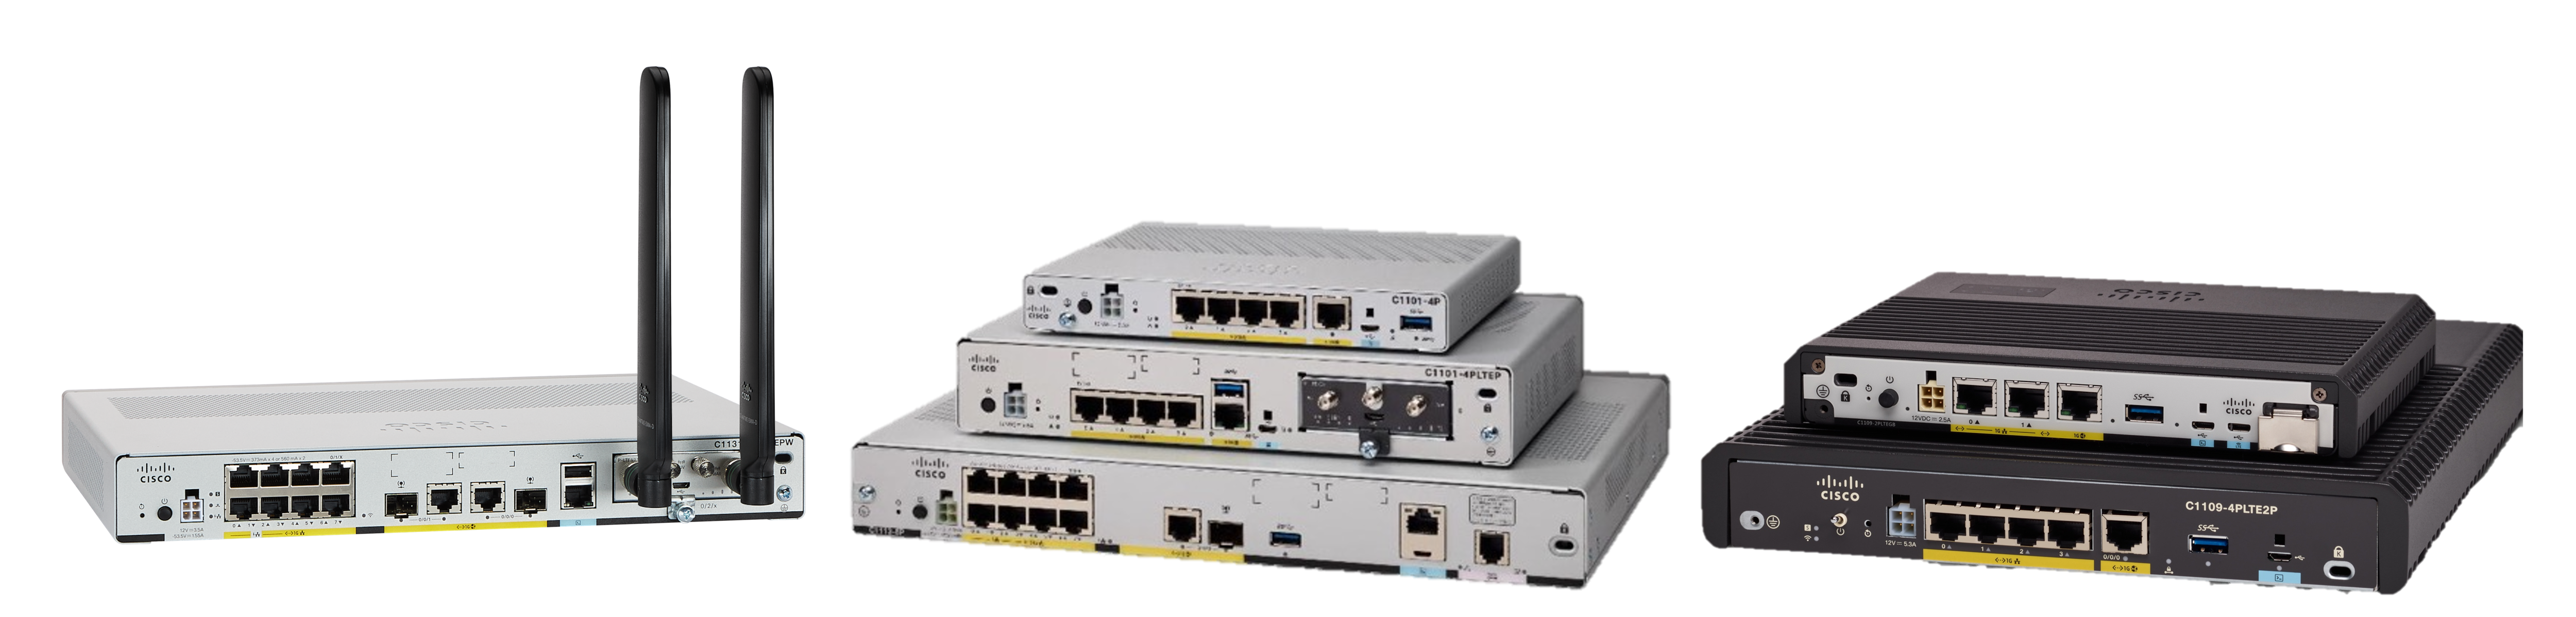 Cisco 1000 Serie Router a servizi integrati